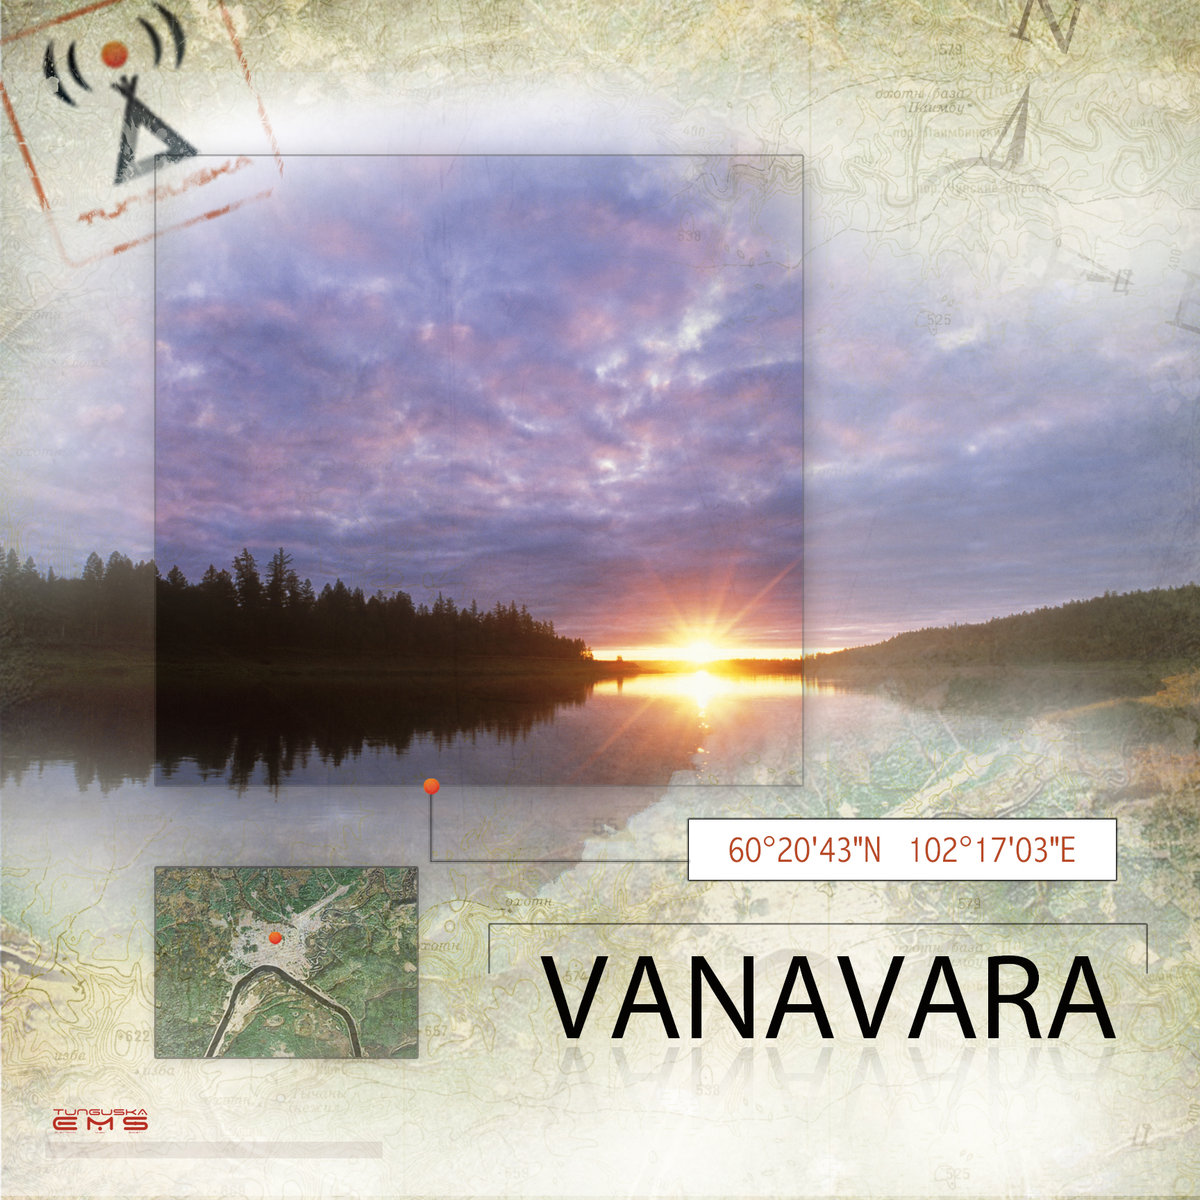 Eugene Kush - MMOWM (part 1) @ 'Point - Vanavara' album (electronic, ambient)